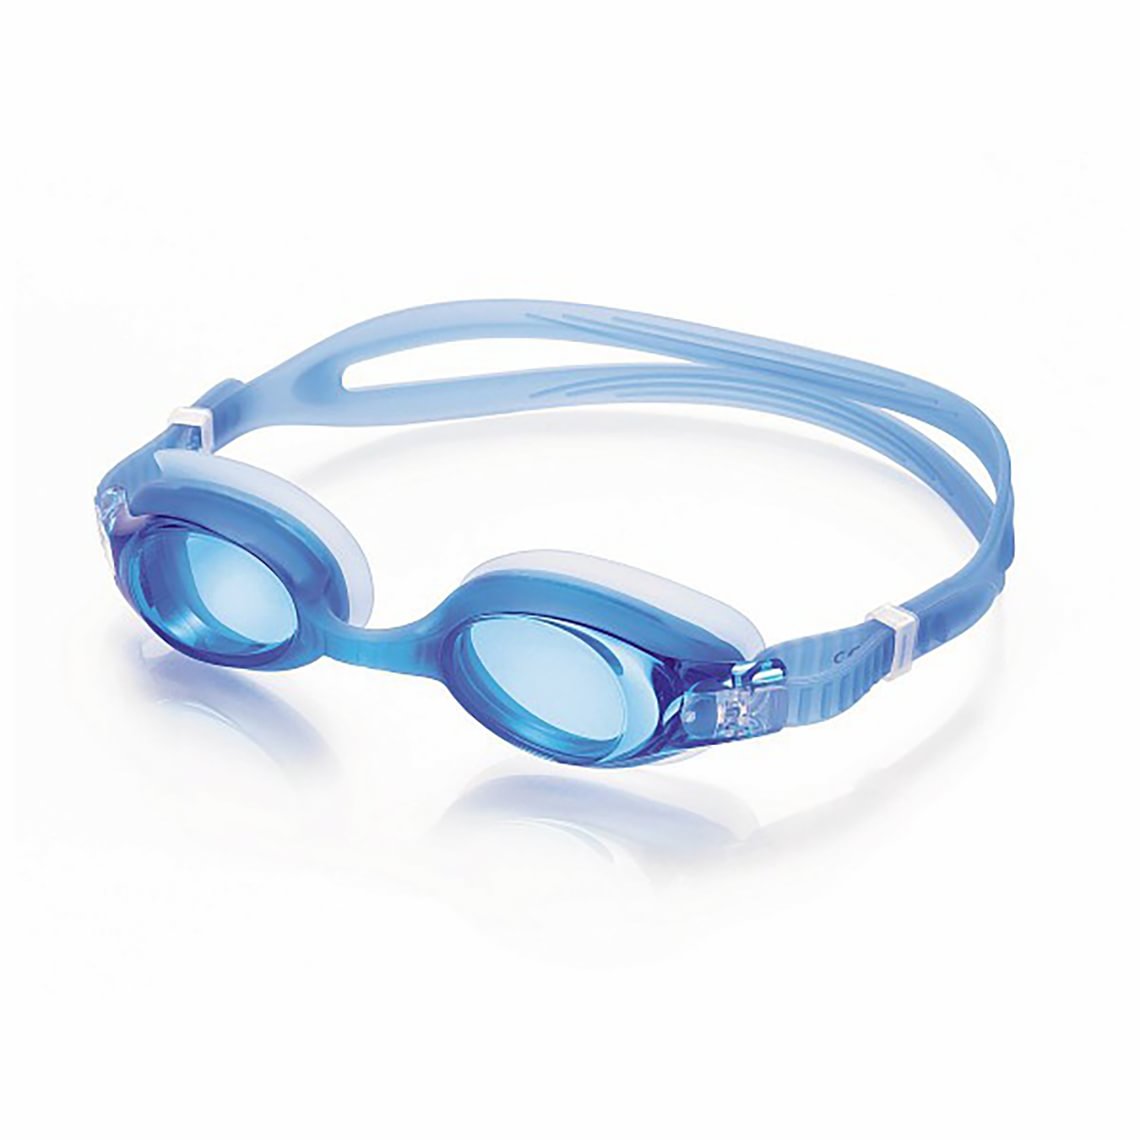 Uimalasit  Junior Sininen